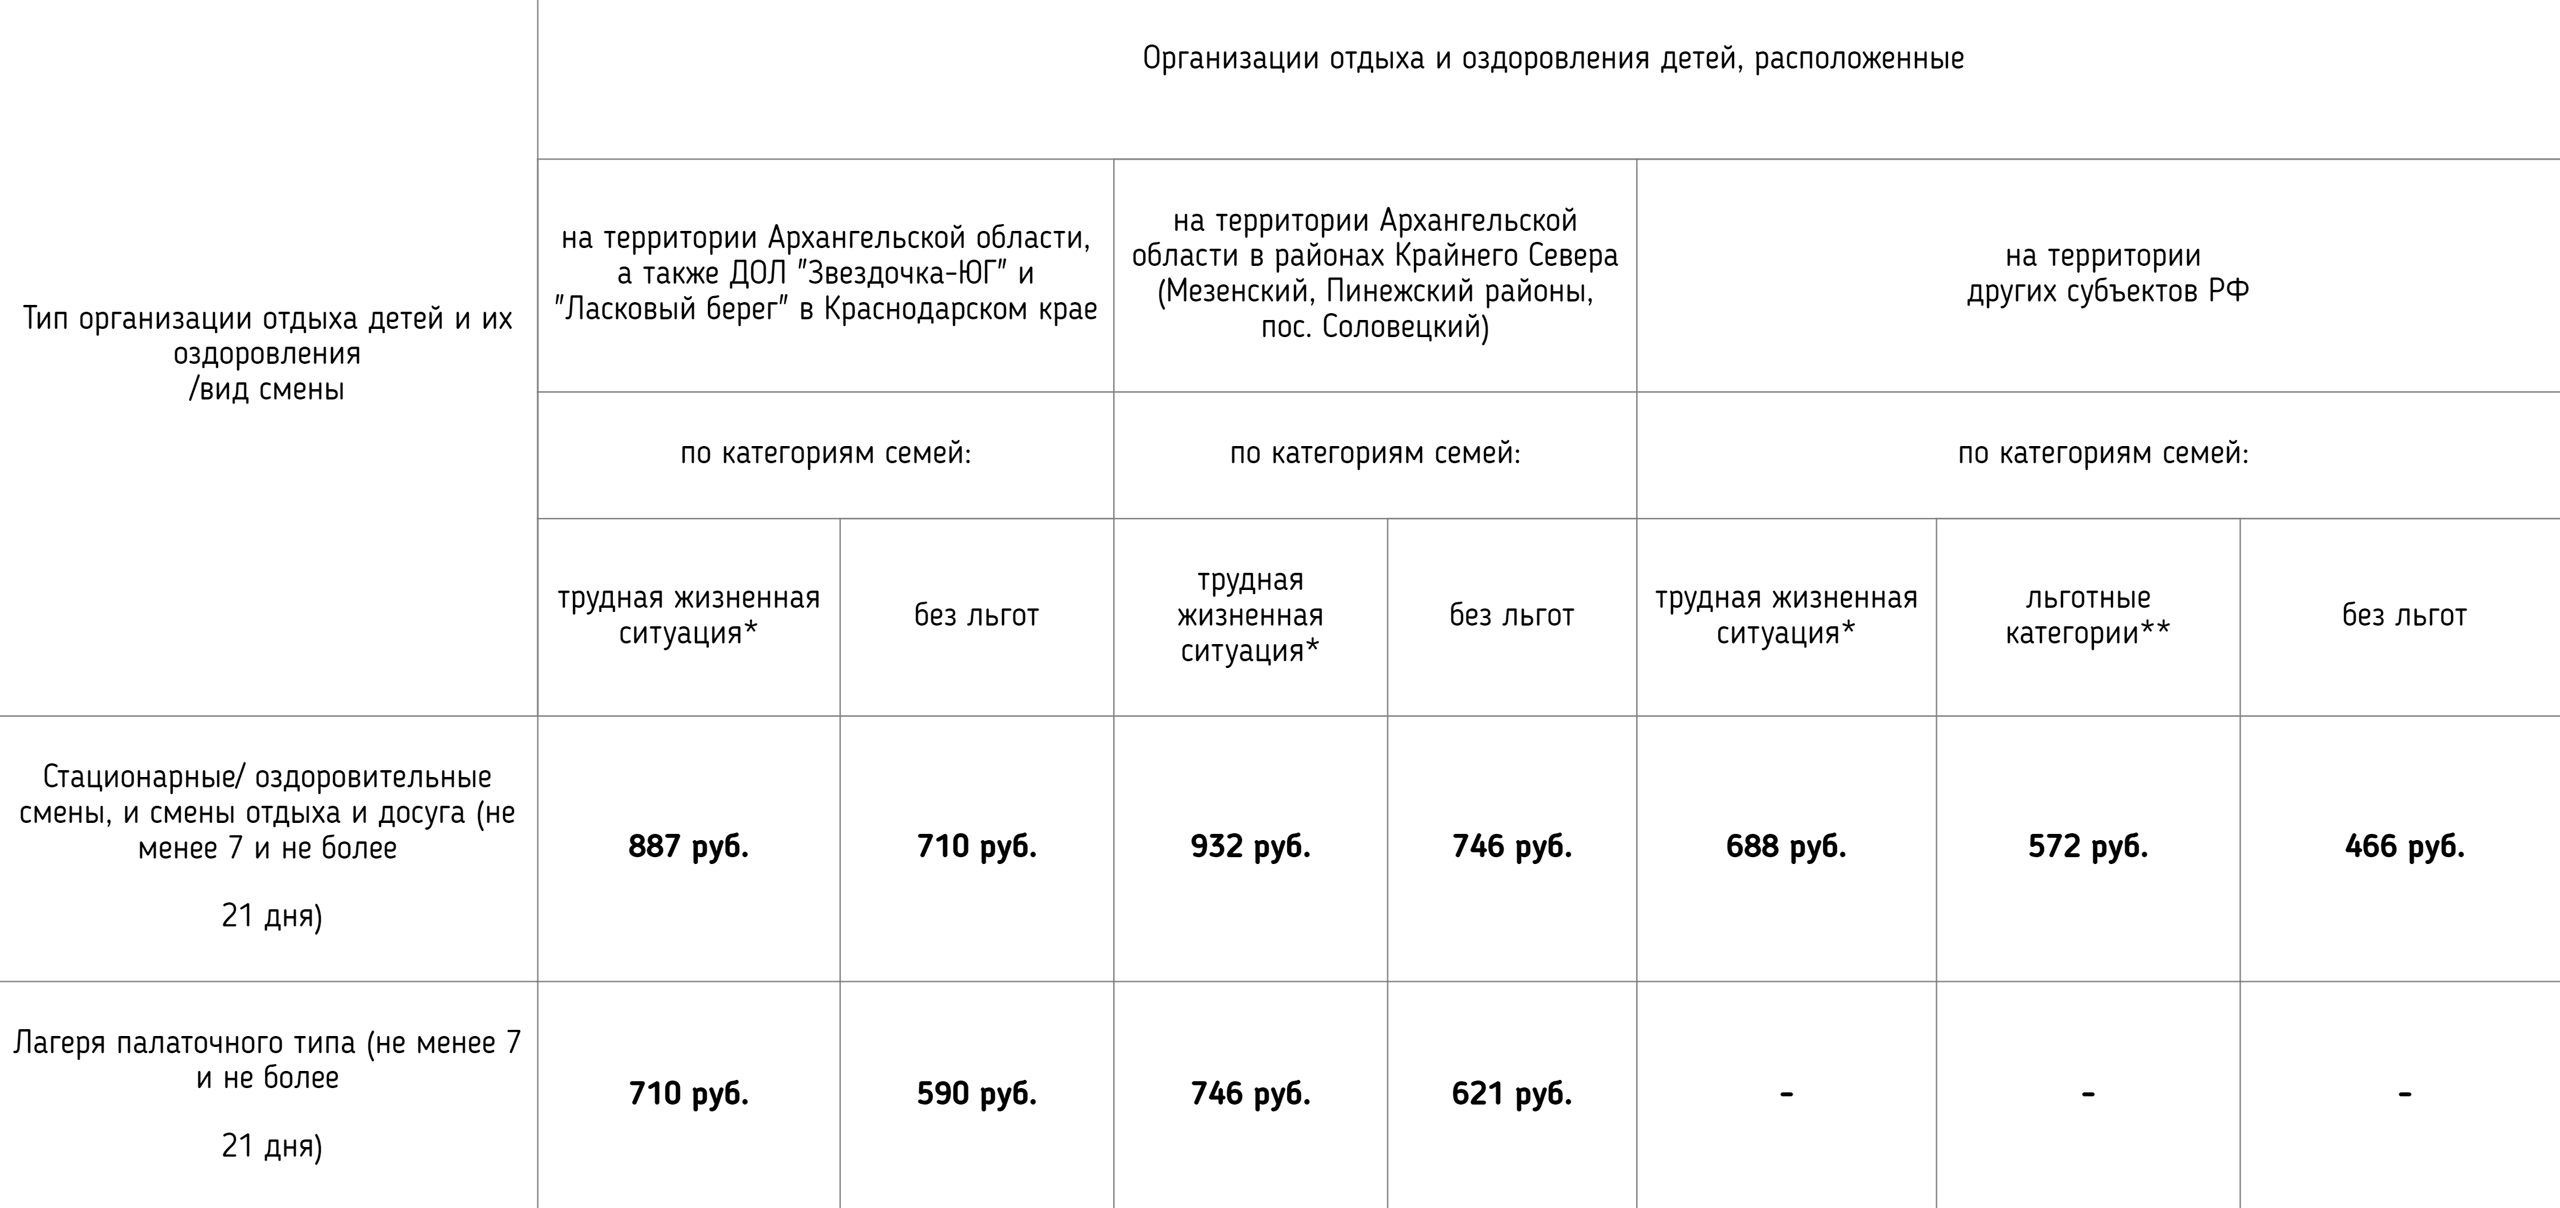 Размеры компенсации за путевки разным категориям семей: льготникам вернут 572 рубля за 1 день пребывания в лагере, а детям без льгот — 466 рублей